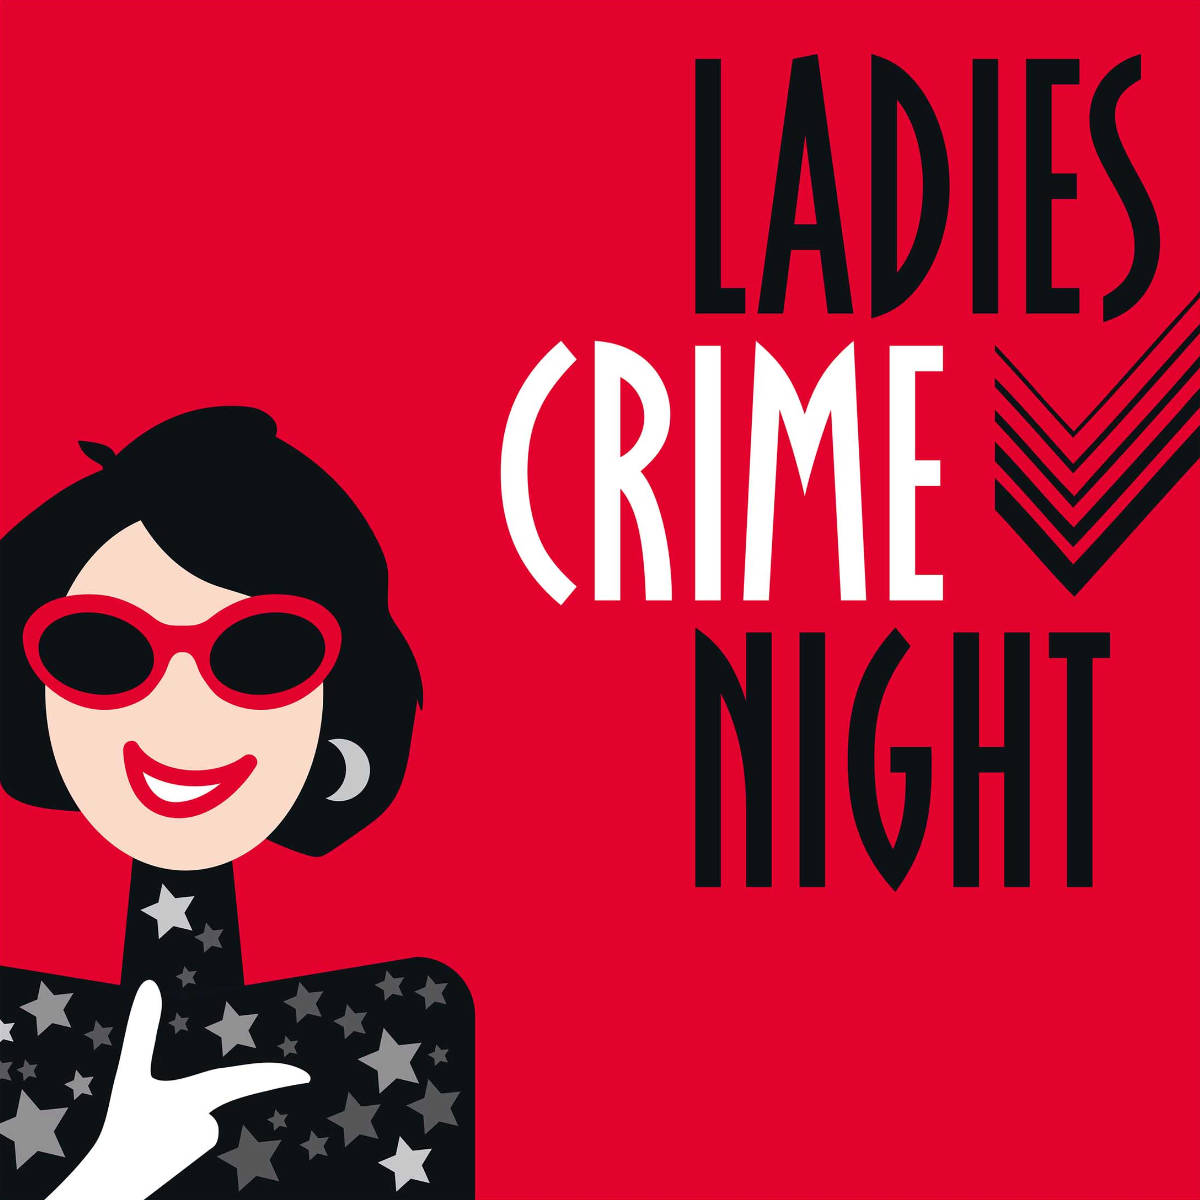 Bild von der Veranstaltung Die Ladies Crime Night in Böhringen